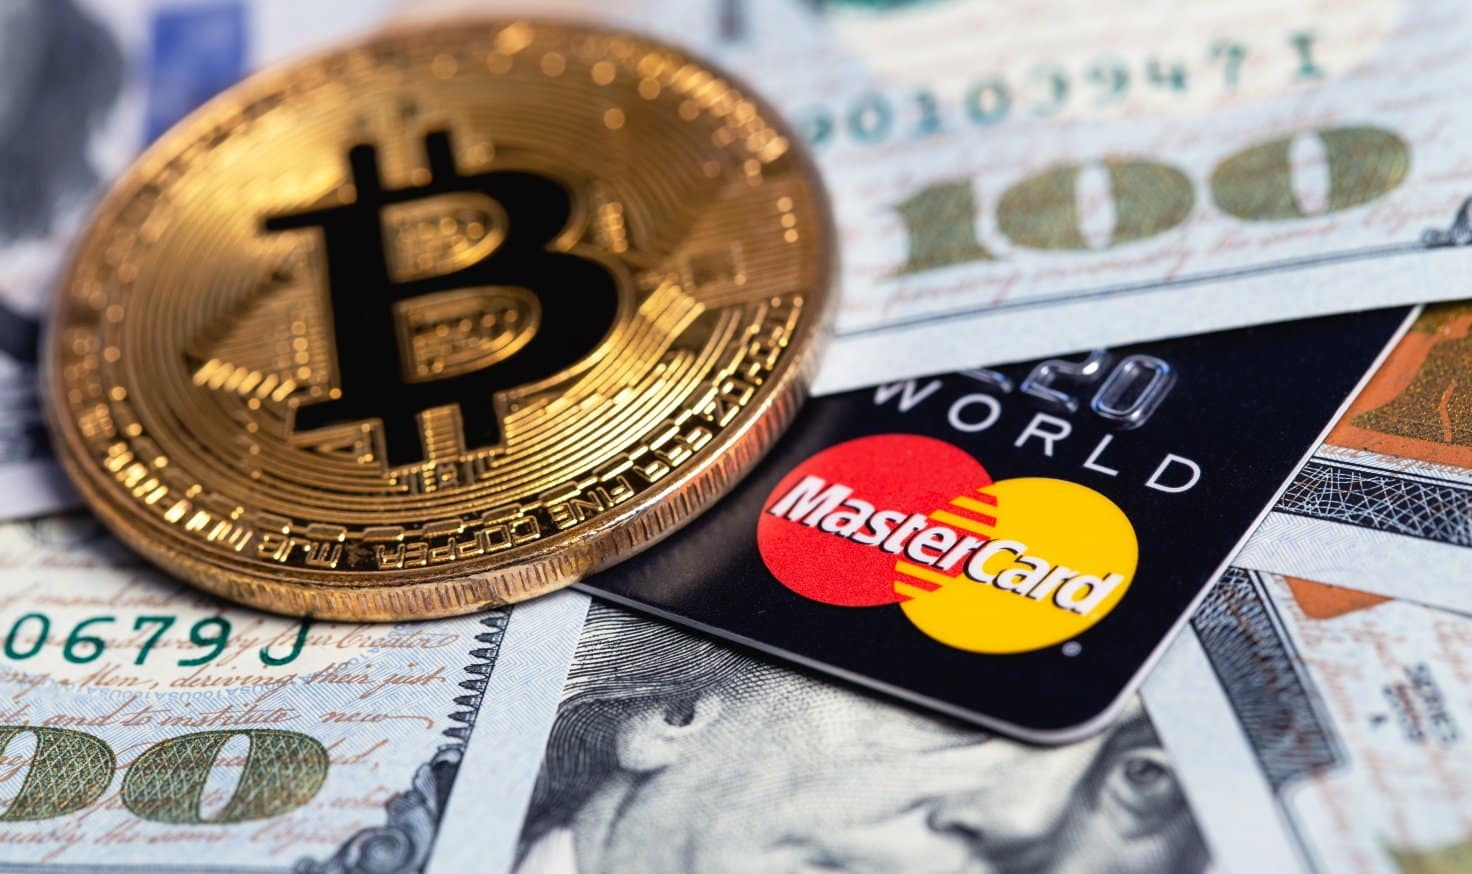 "Революционизиране на цифровите валути на централните банки: Mastercard и Blockchain формират стратегическо партньорство"
